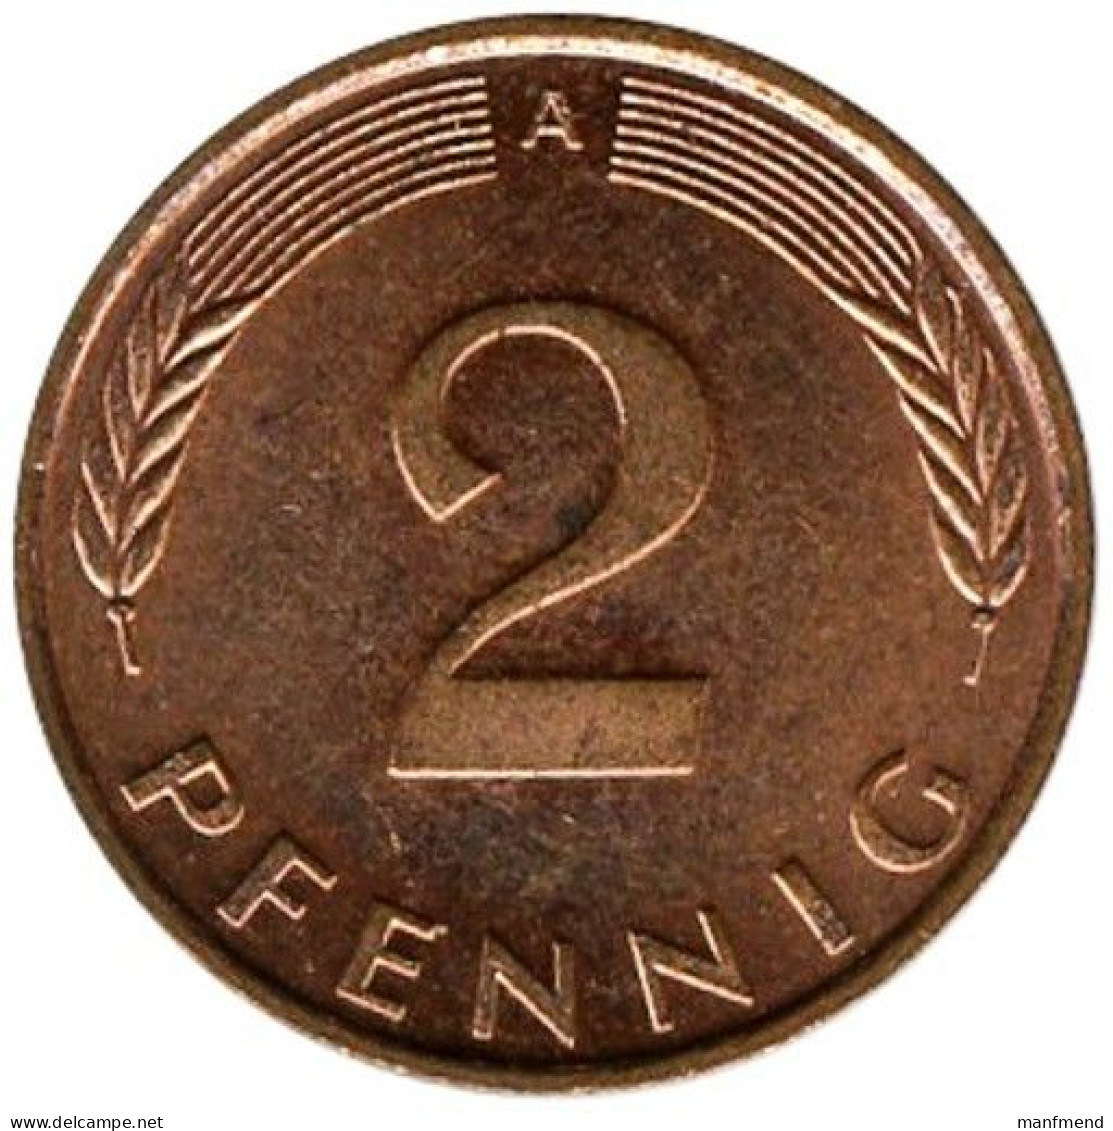 Germany - 1991 - KM 106a - 2 Pfennig - Mintmark "A" - Berlin - XF - 2 Pfennig